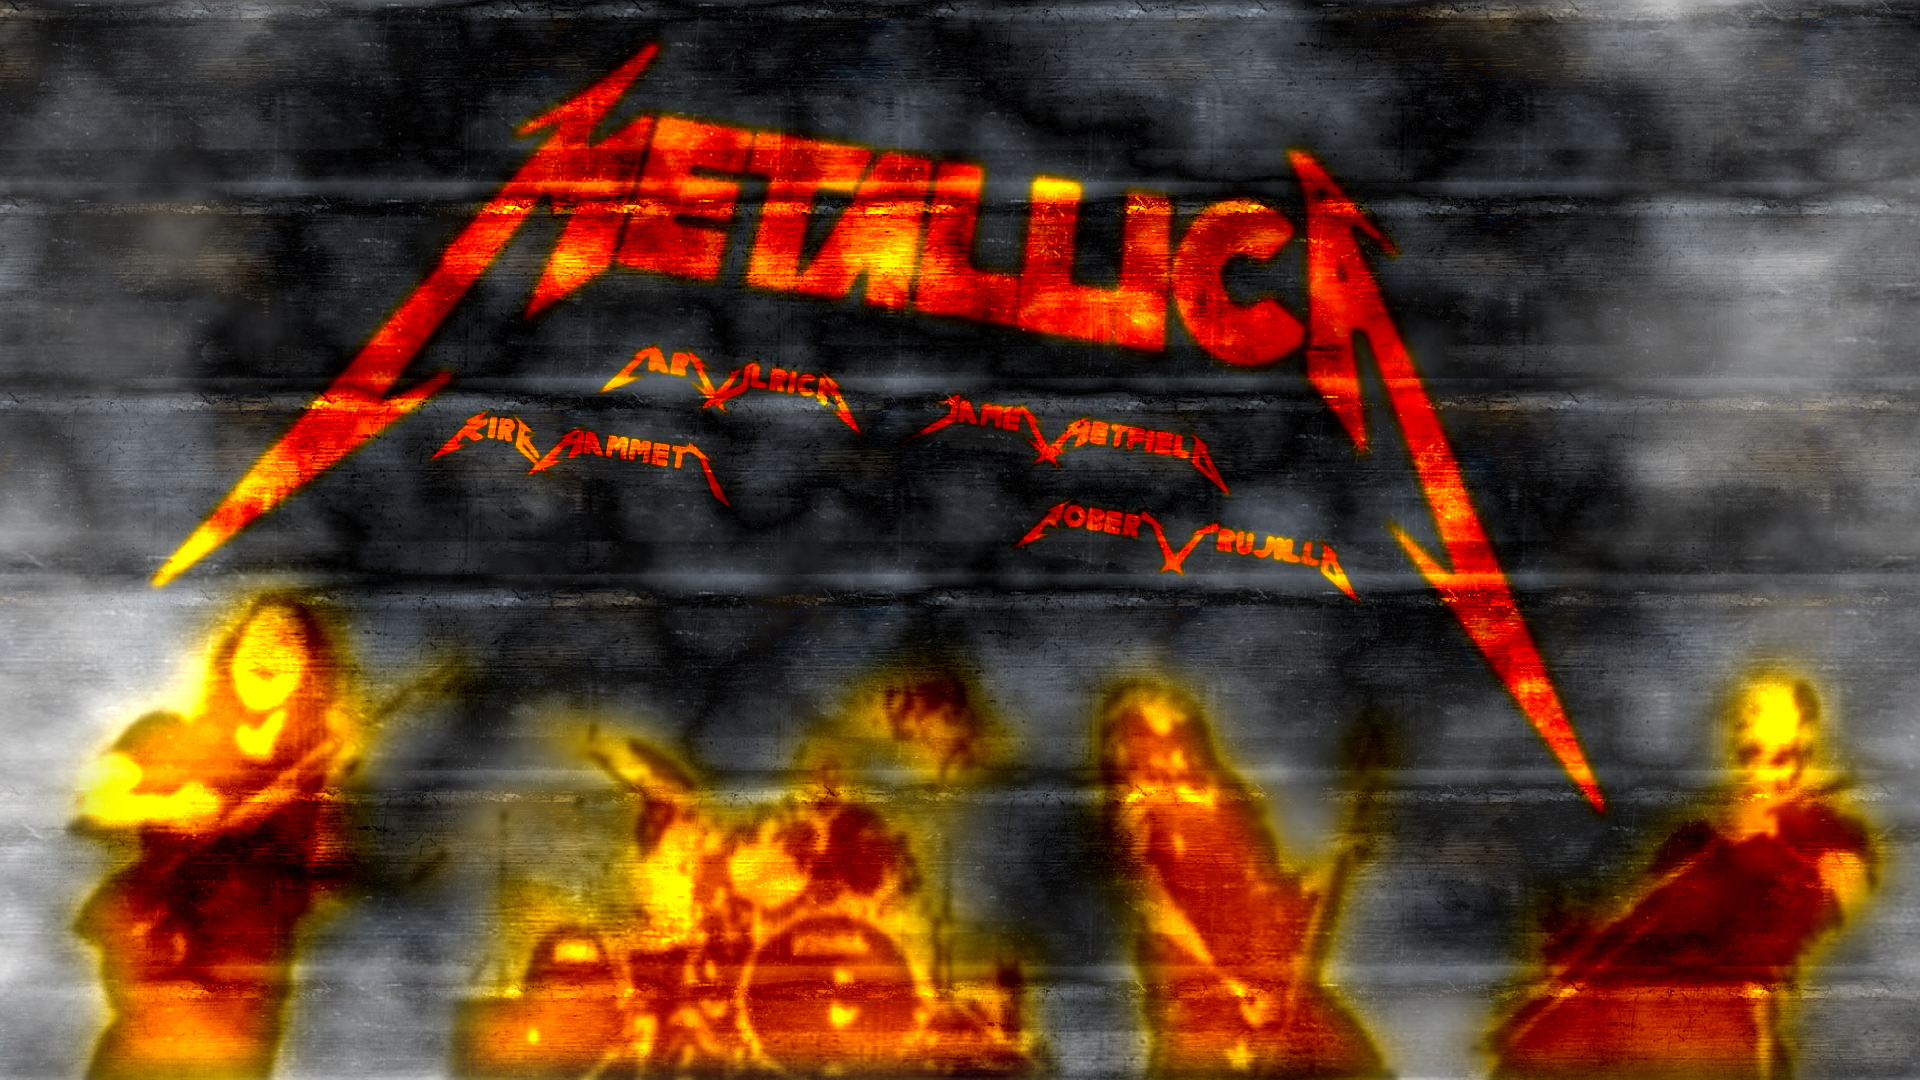 Fondos De Pantalla Hd De Metallica - HD Wallpaper 